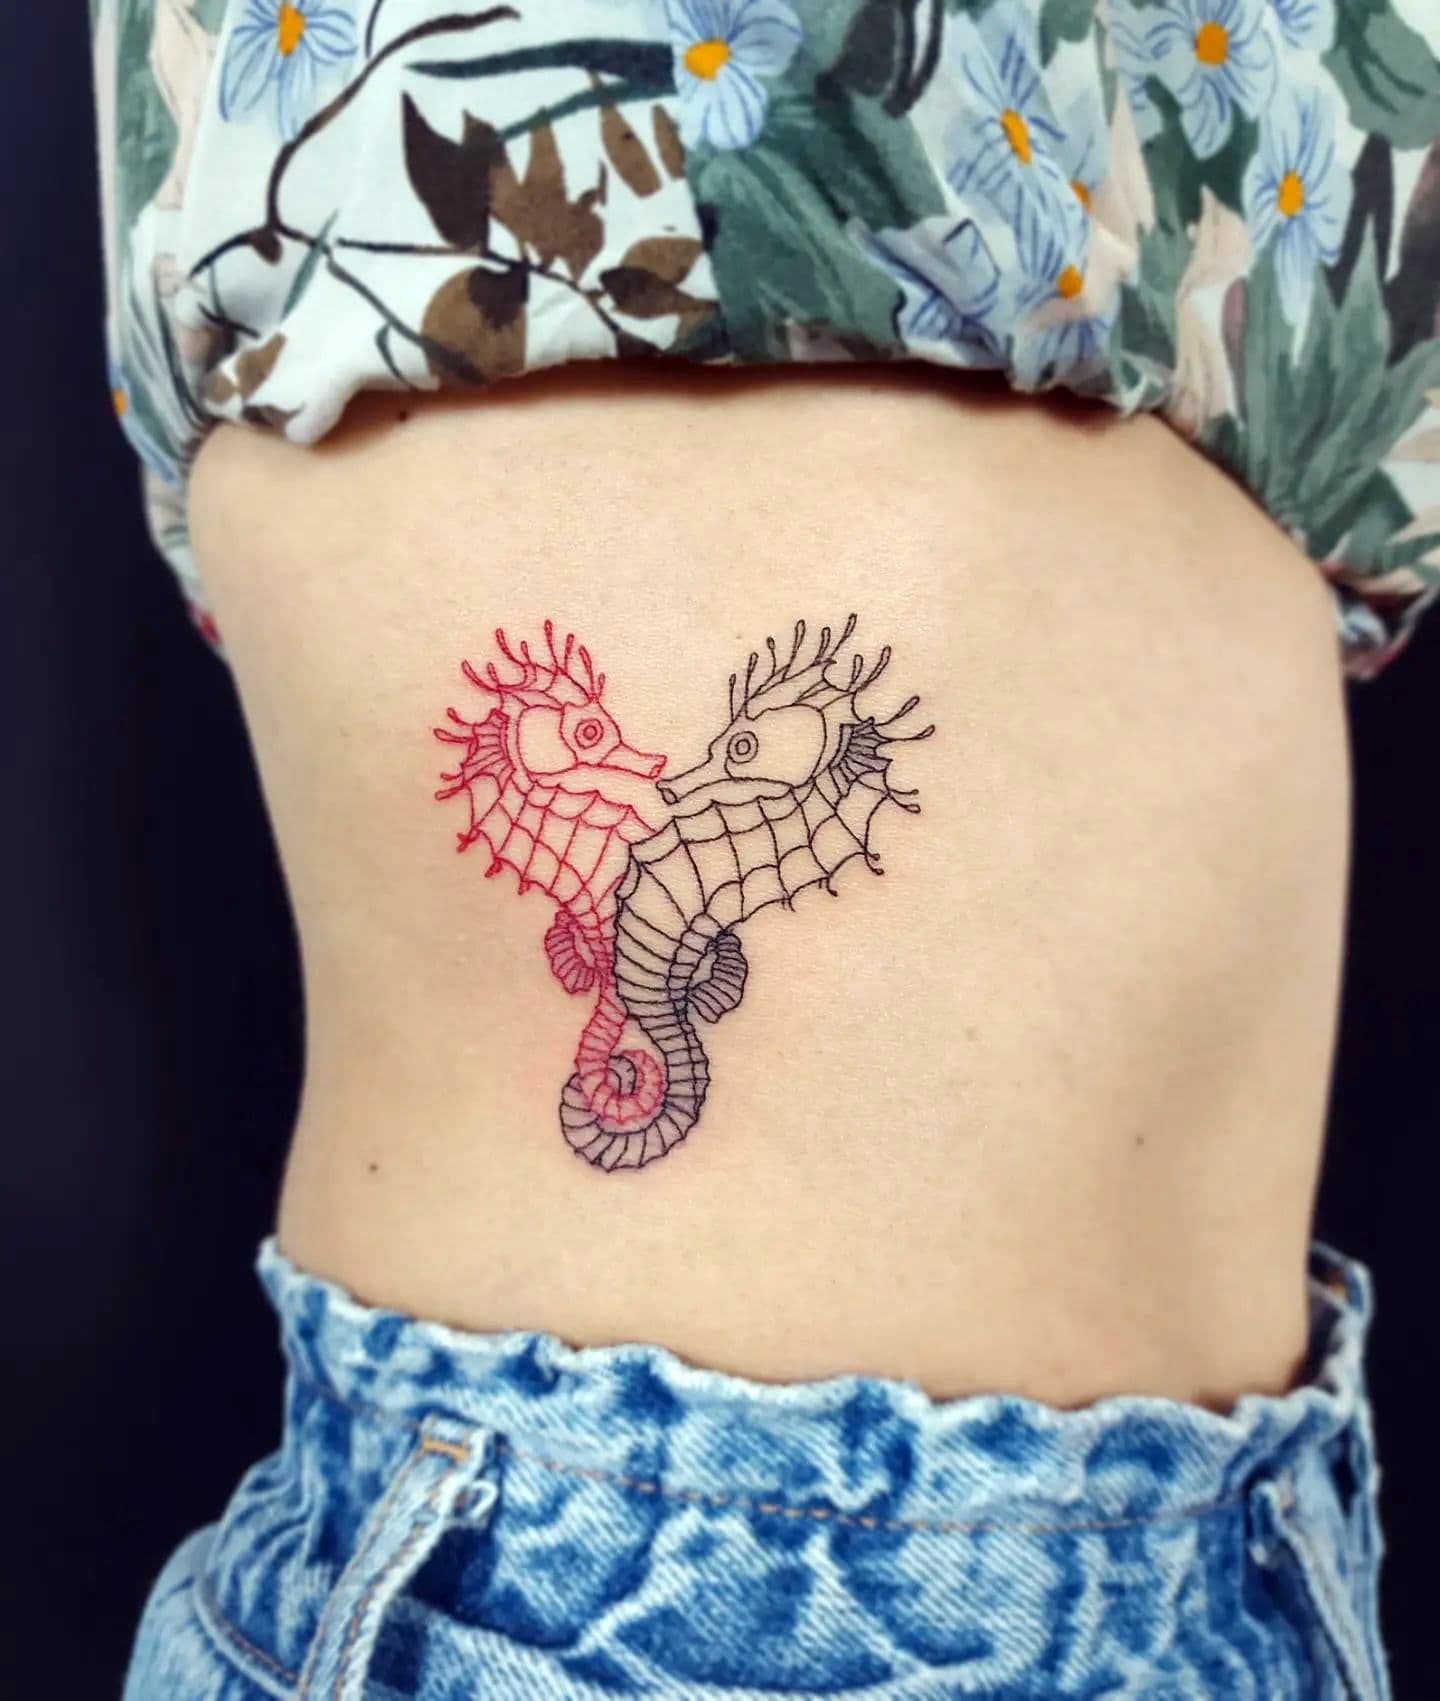 Tatuaje de caballito de mar inusual en una pieza lateral